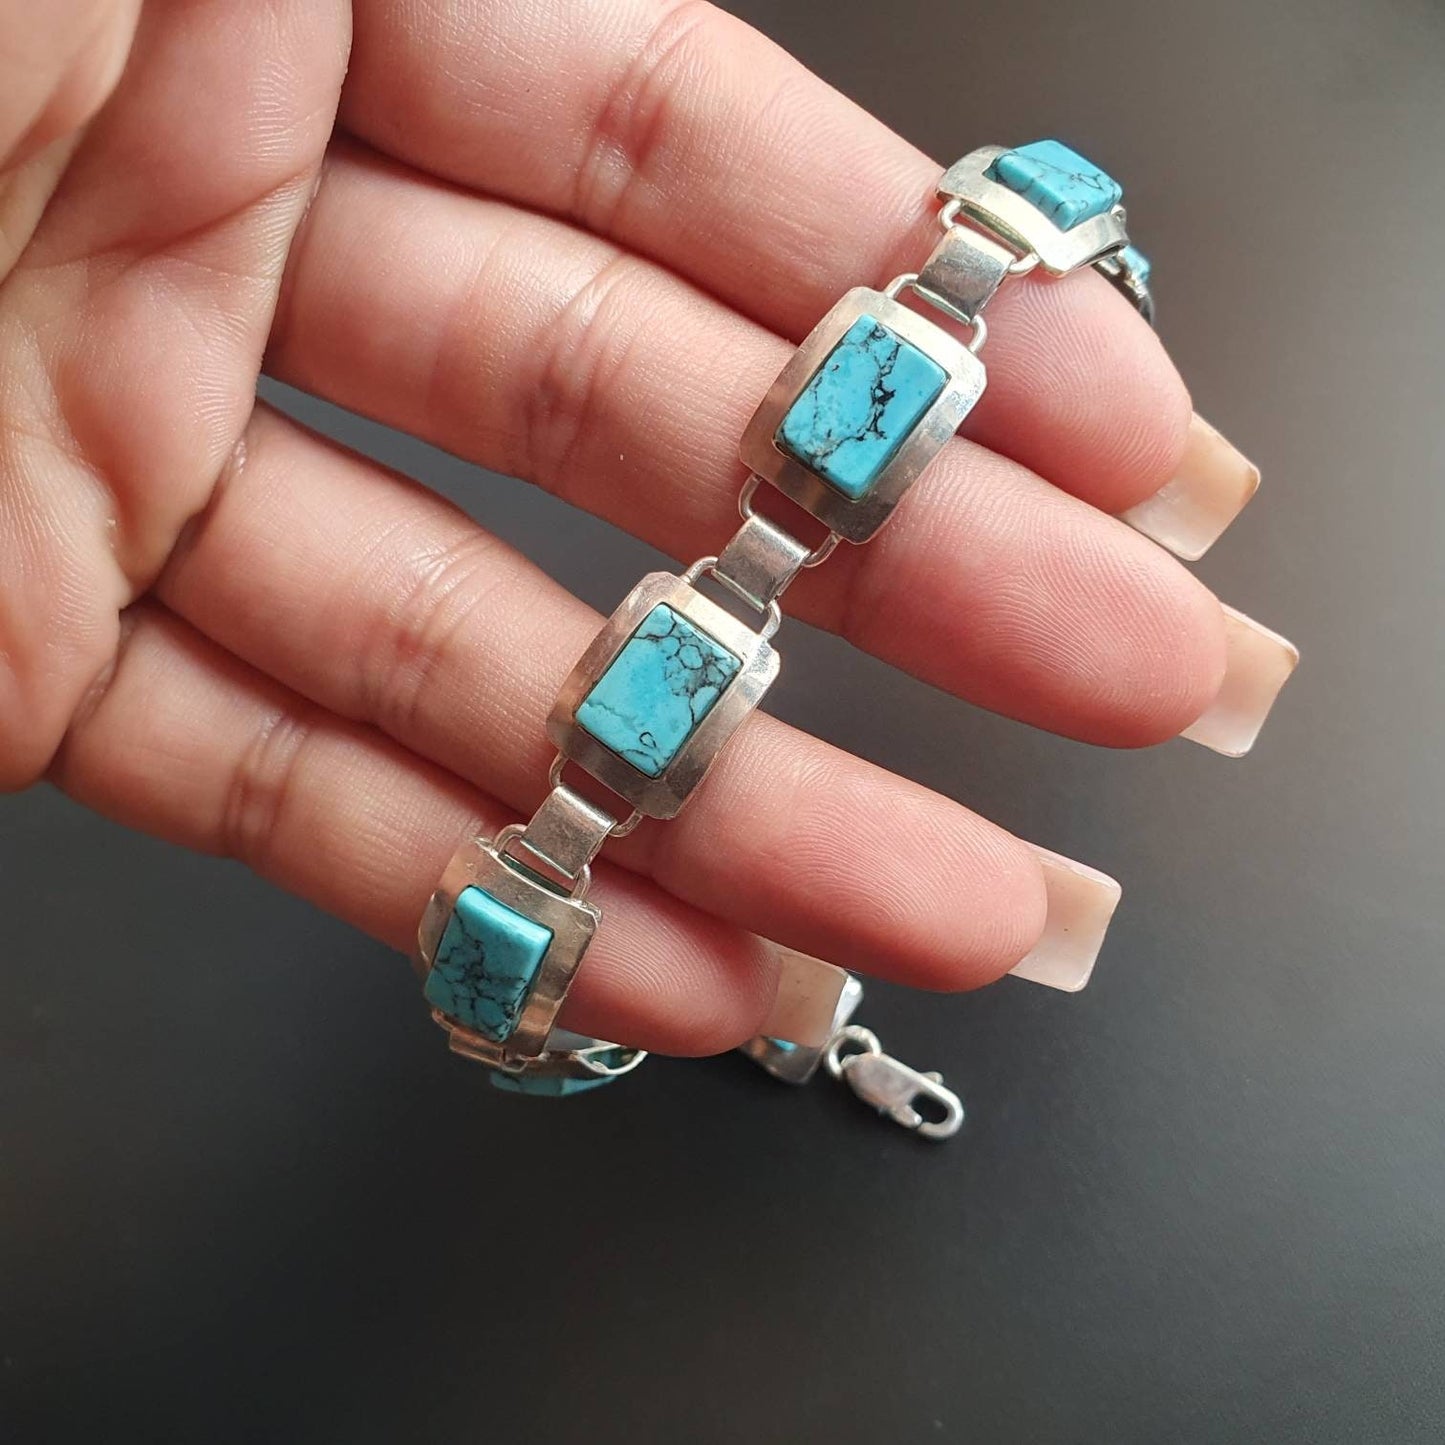 Turquoise earrings, pendant, bracelet, silver jewellery, sterling silver earrings, necklace, gifts, statement bracelet, silver jewellery